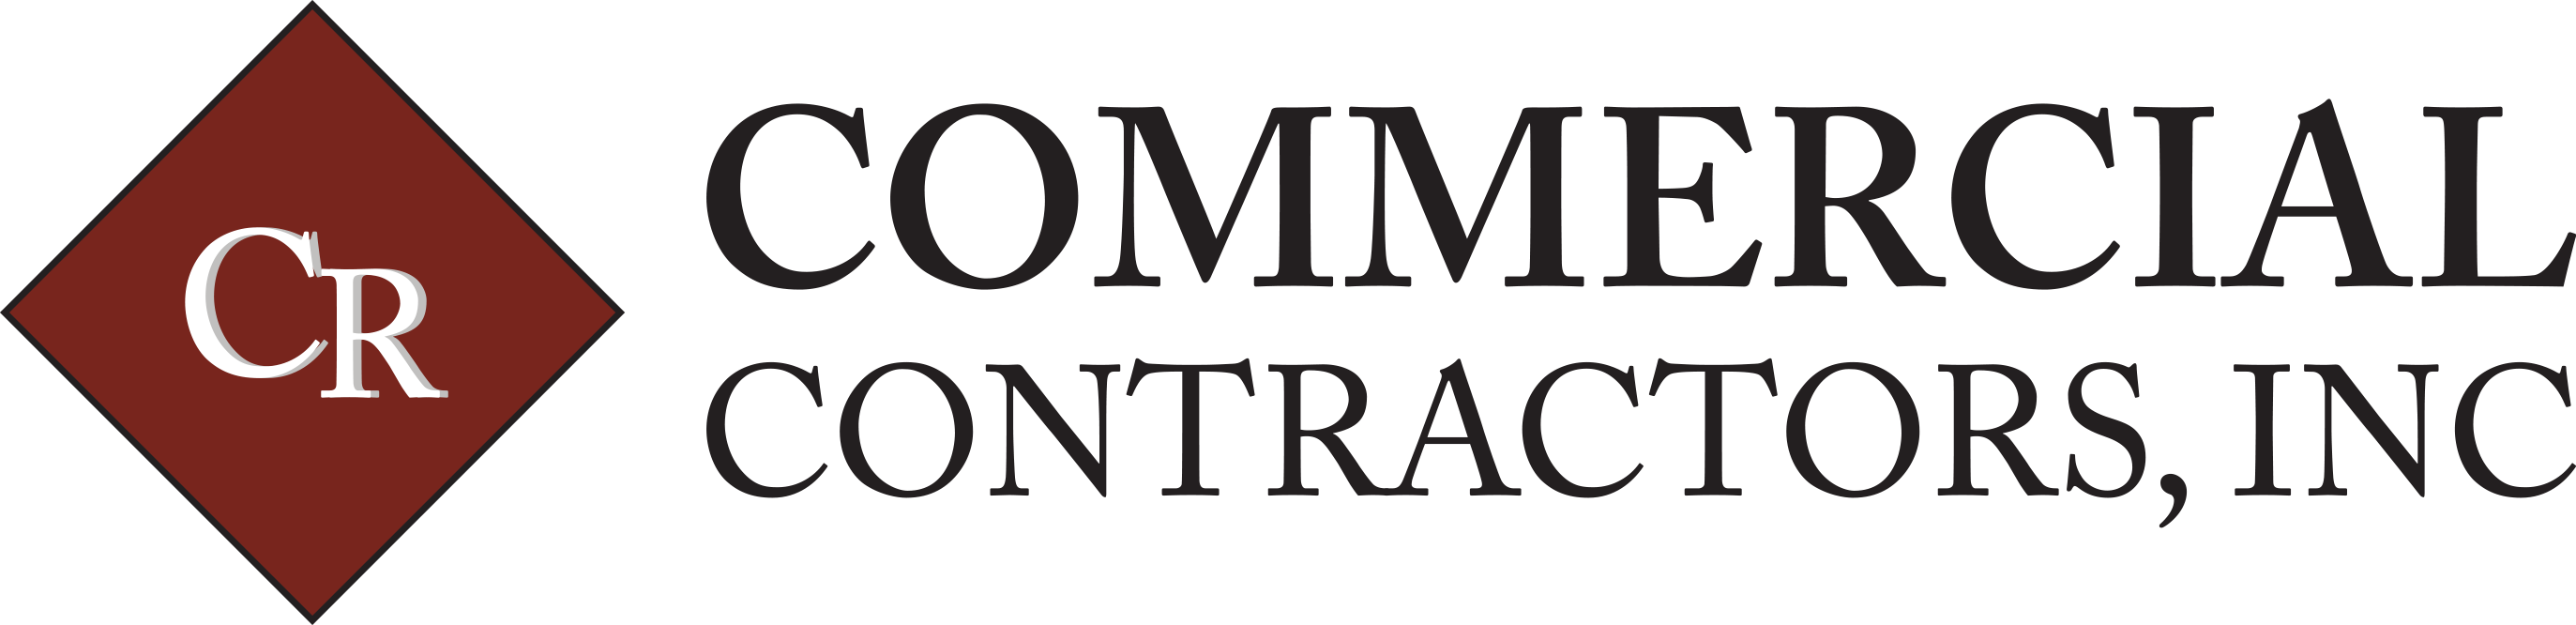 CR Commercial Contractors, Inc. Logo